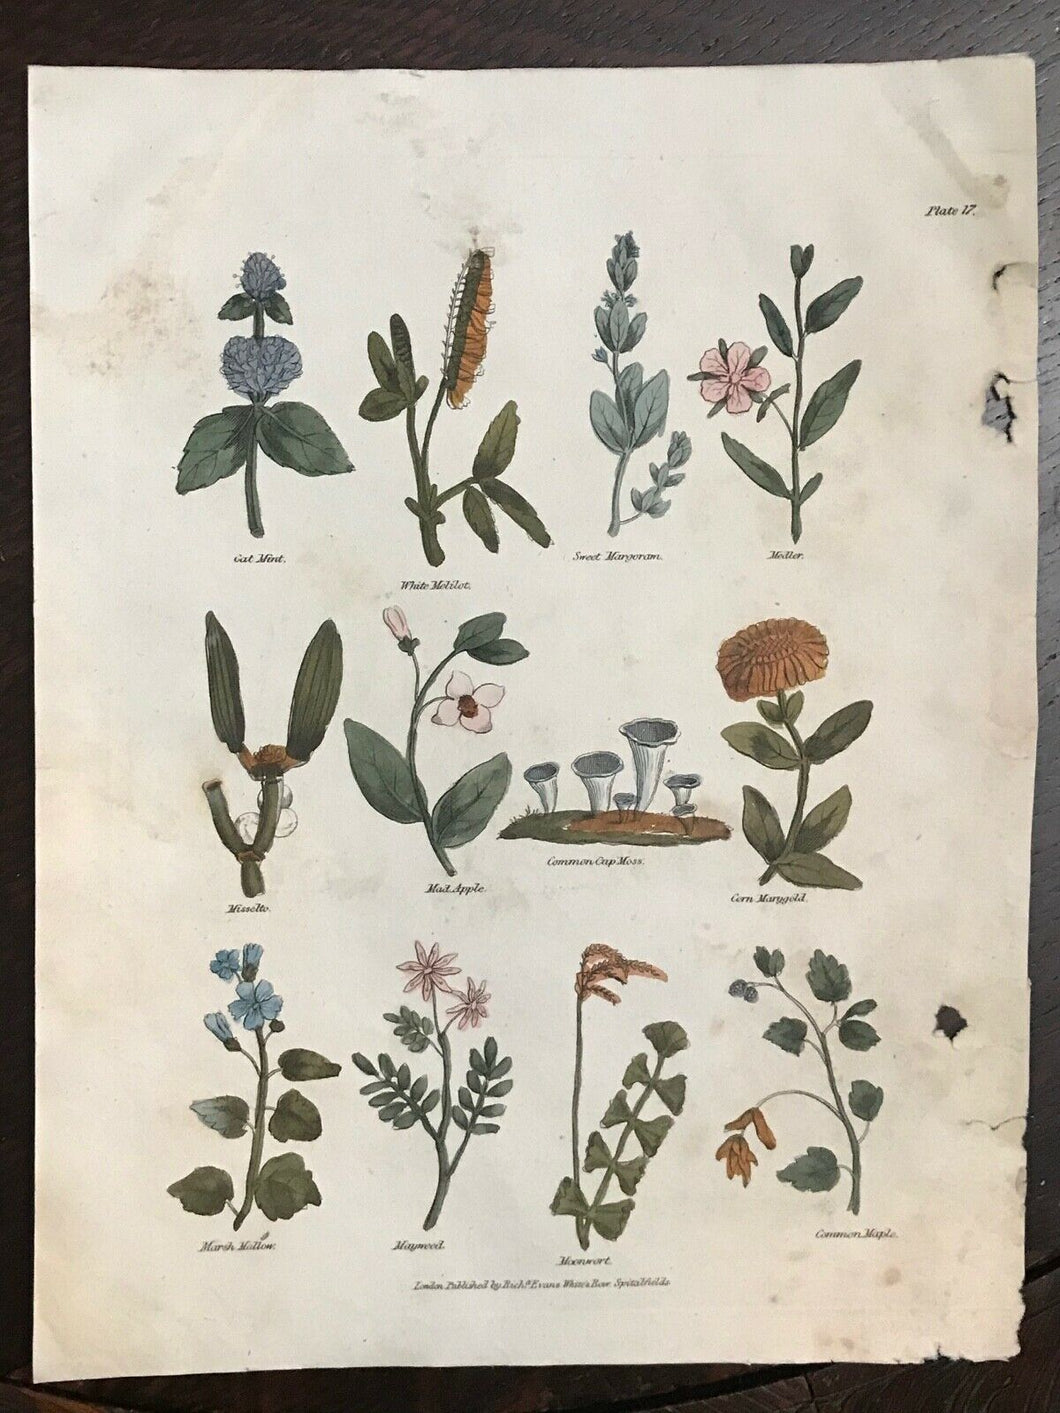 1814 COMPLETE HERBAL - Nicholas Culpeper Herb Plant Botanical Engraving Plate